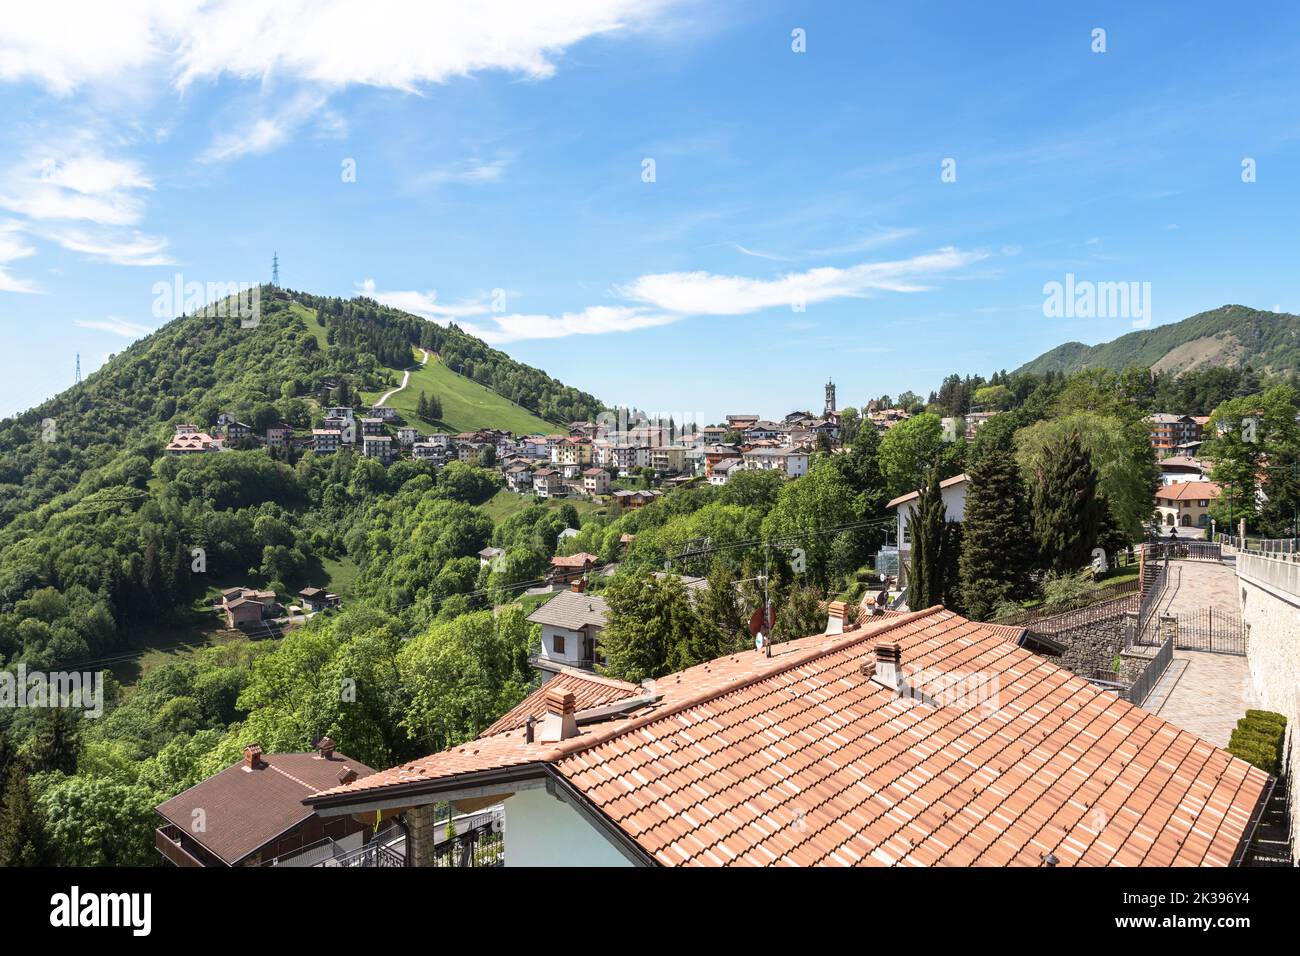 Magnifique paysage de la ville de Selvino Orobie Val Seriana. Selvino (BG), ITALIE - 17 mai 2022 Banque D'Images